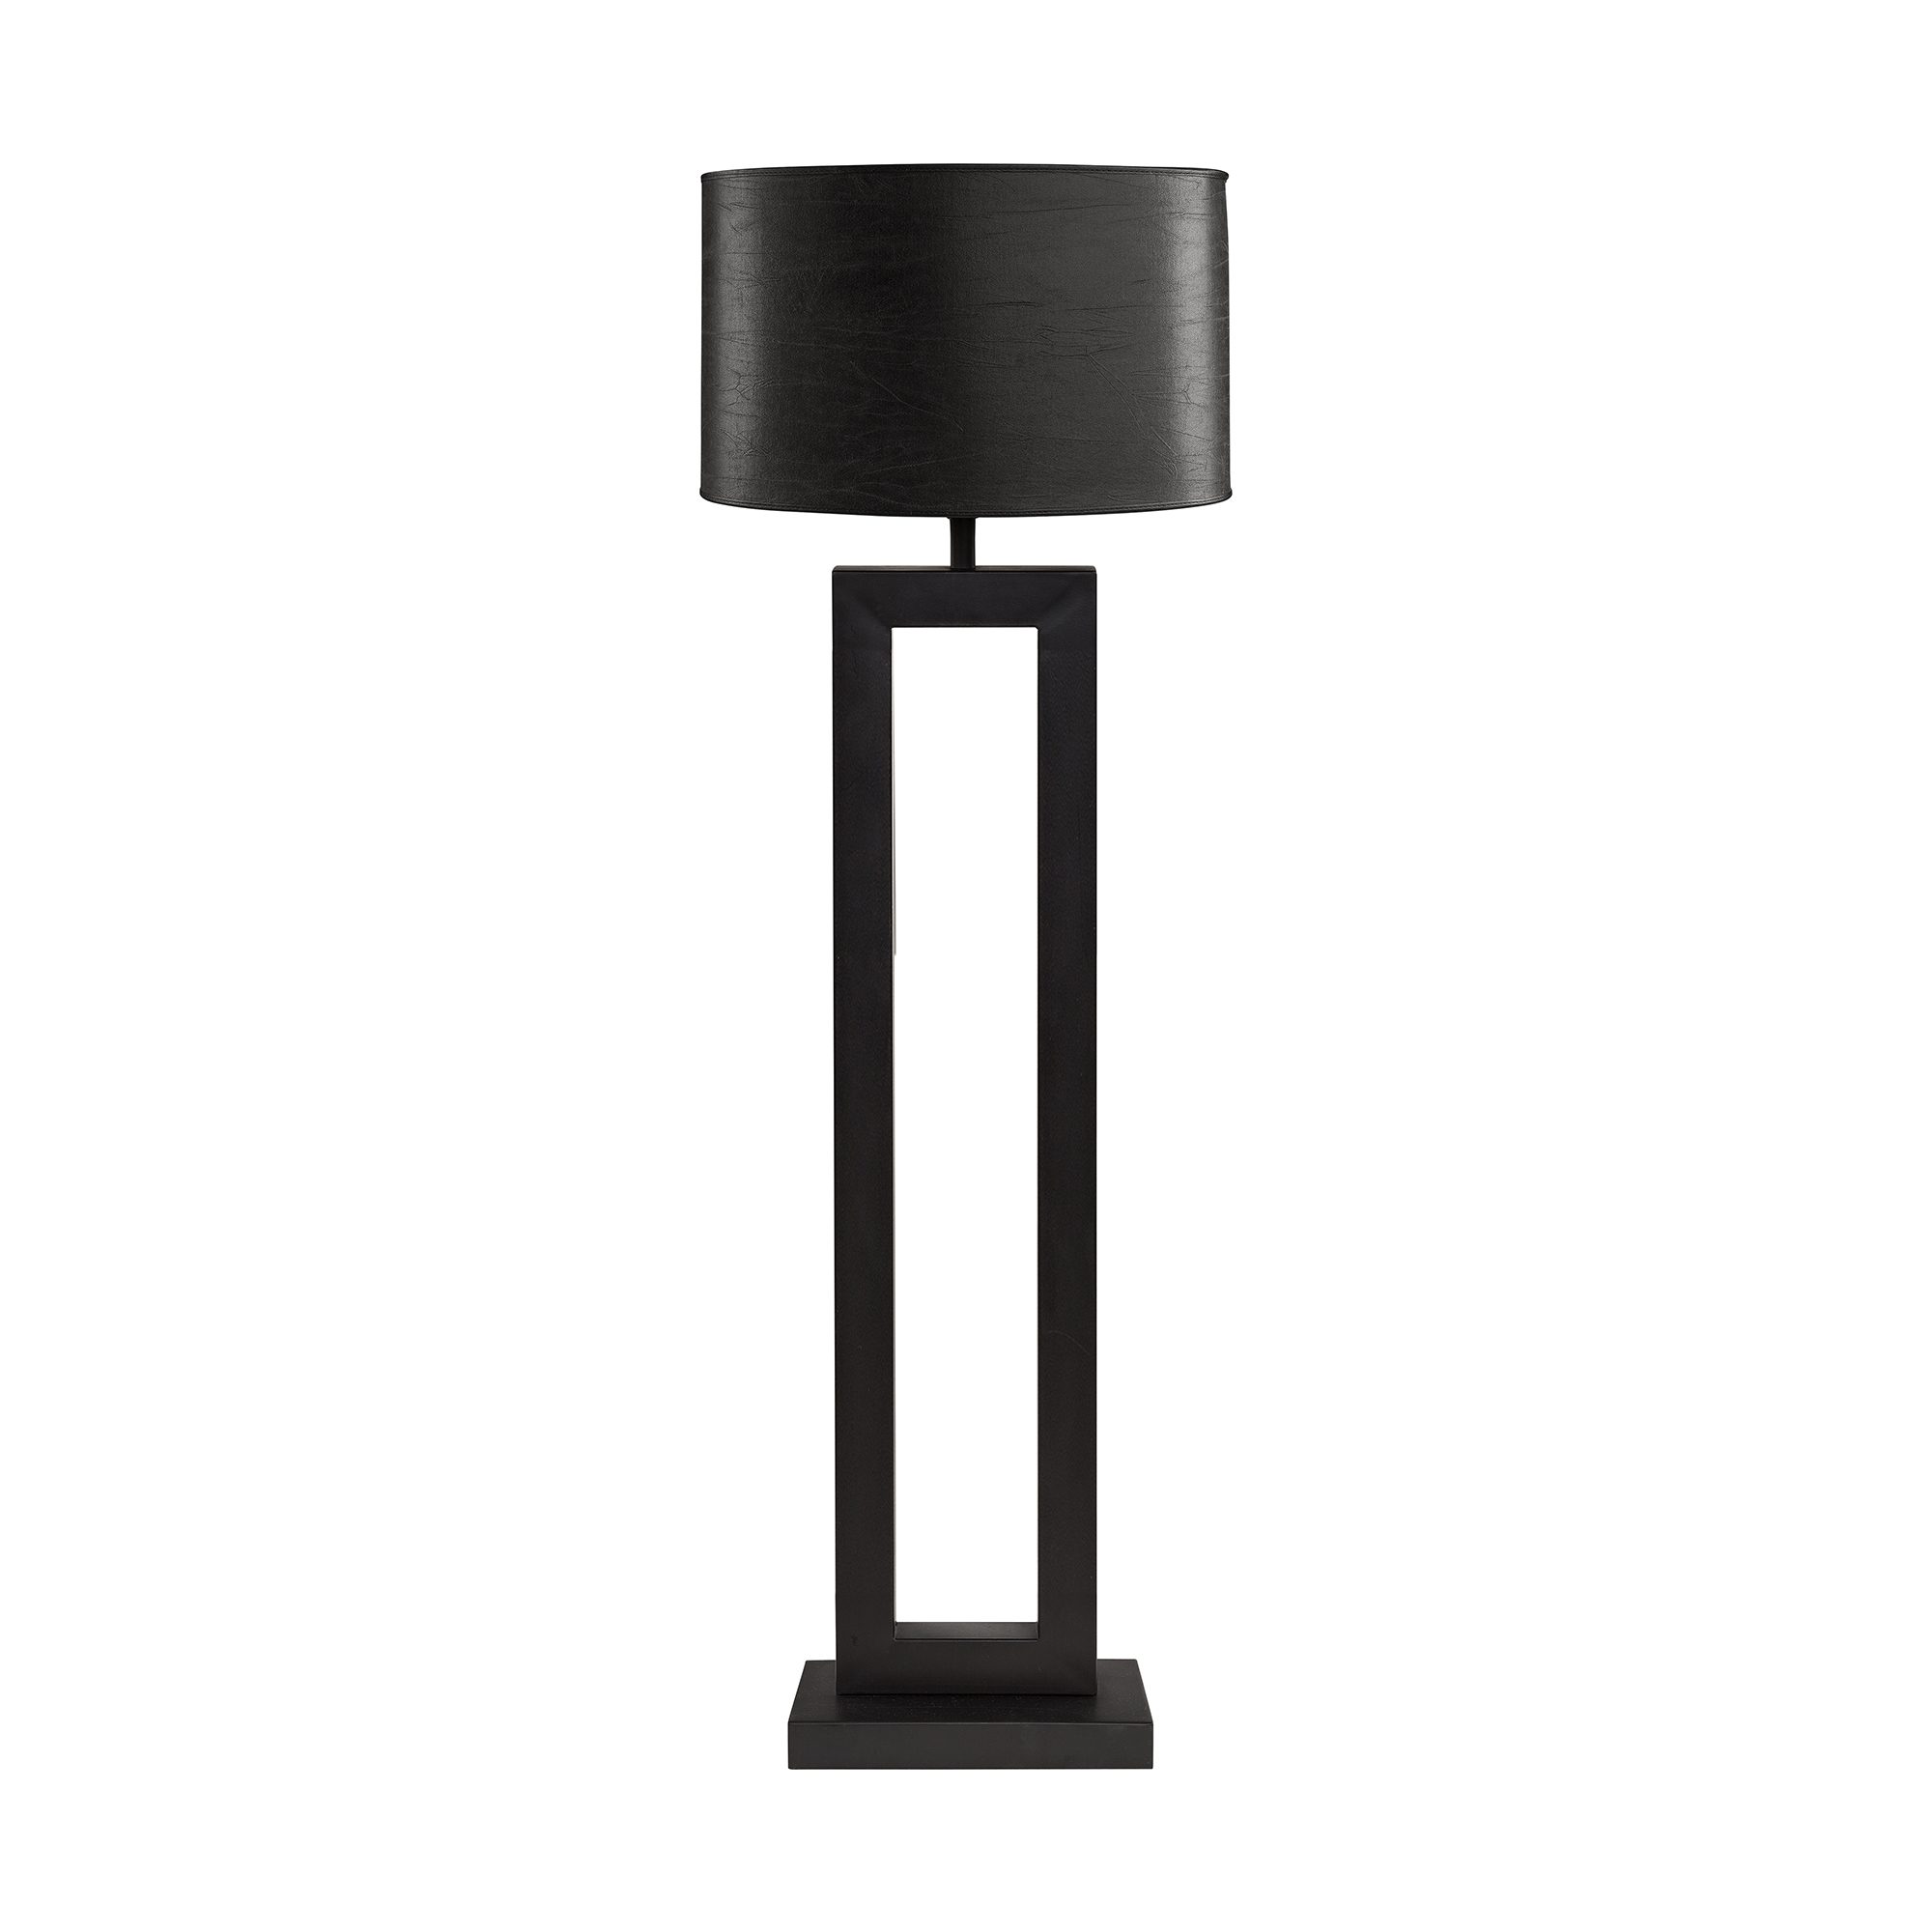 Arezzo golvlampfot från ARtwood, här med lampskärmen Oval i svart.